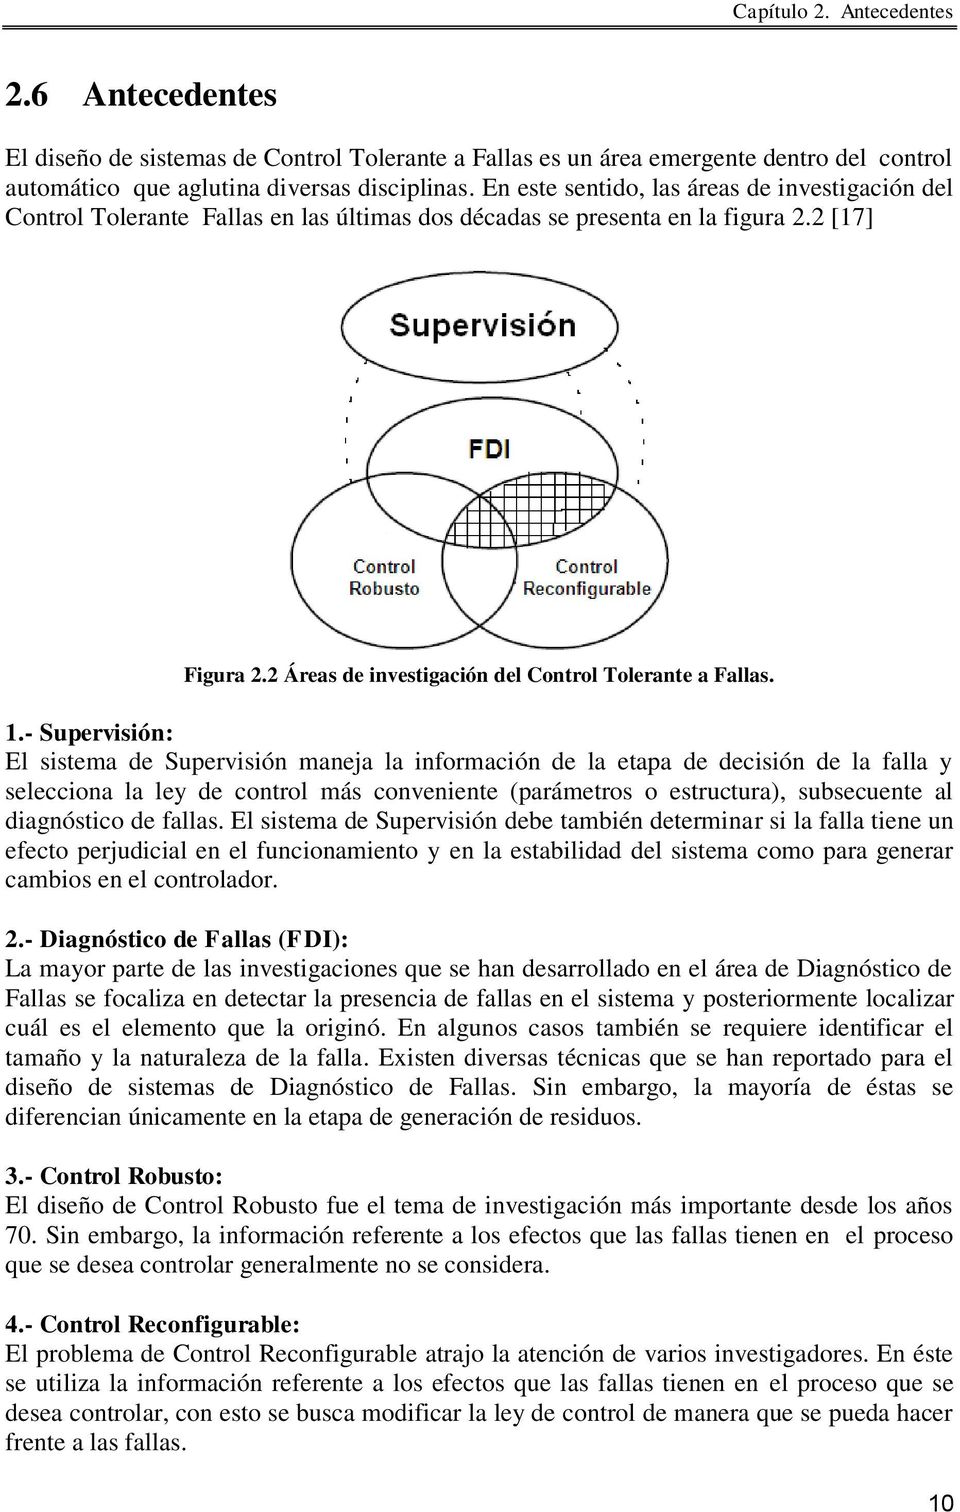 1.- Supervisión: El sistema de Supervisión maneja la información de la etapa de decisión de la falla y selecciona la ley de control más conveniente (parámetros o estructura), subsecuente al